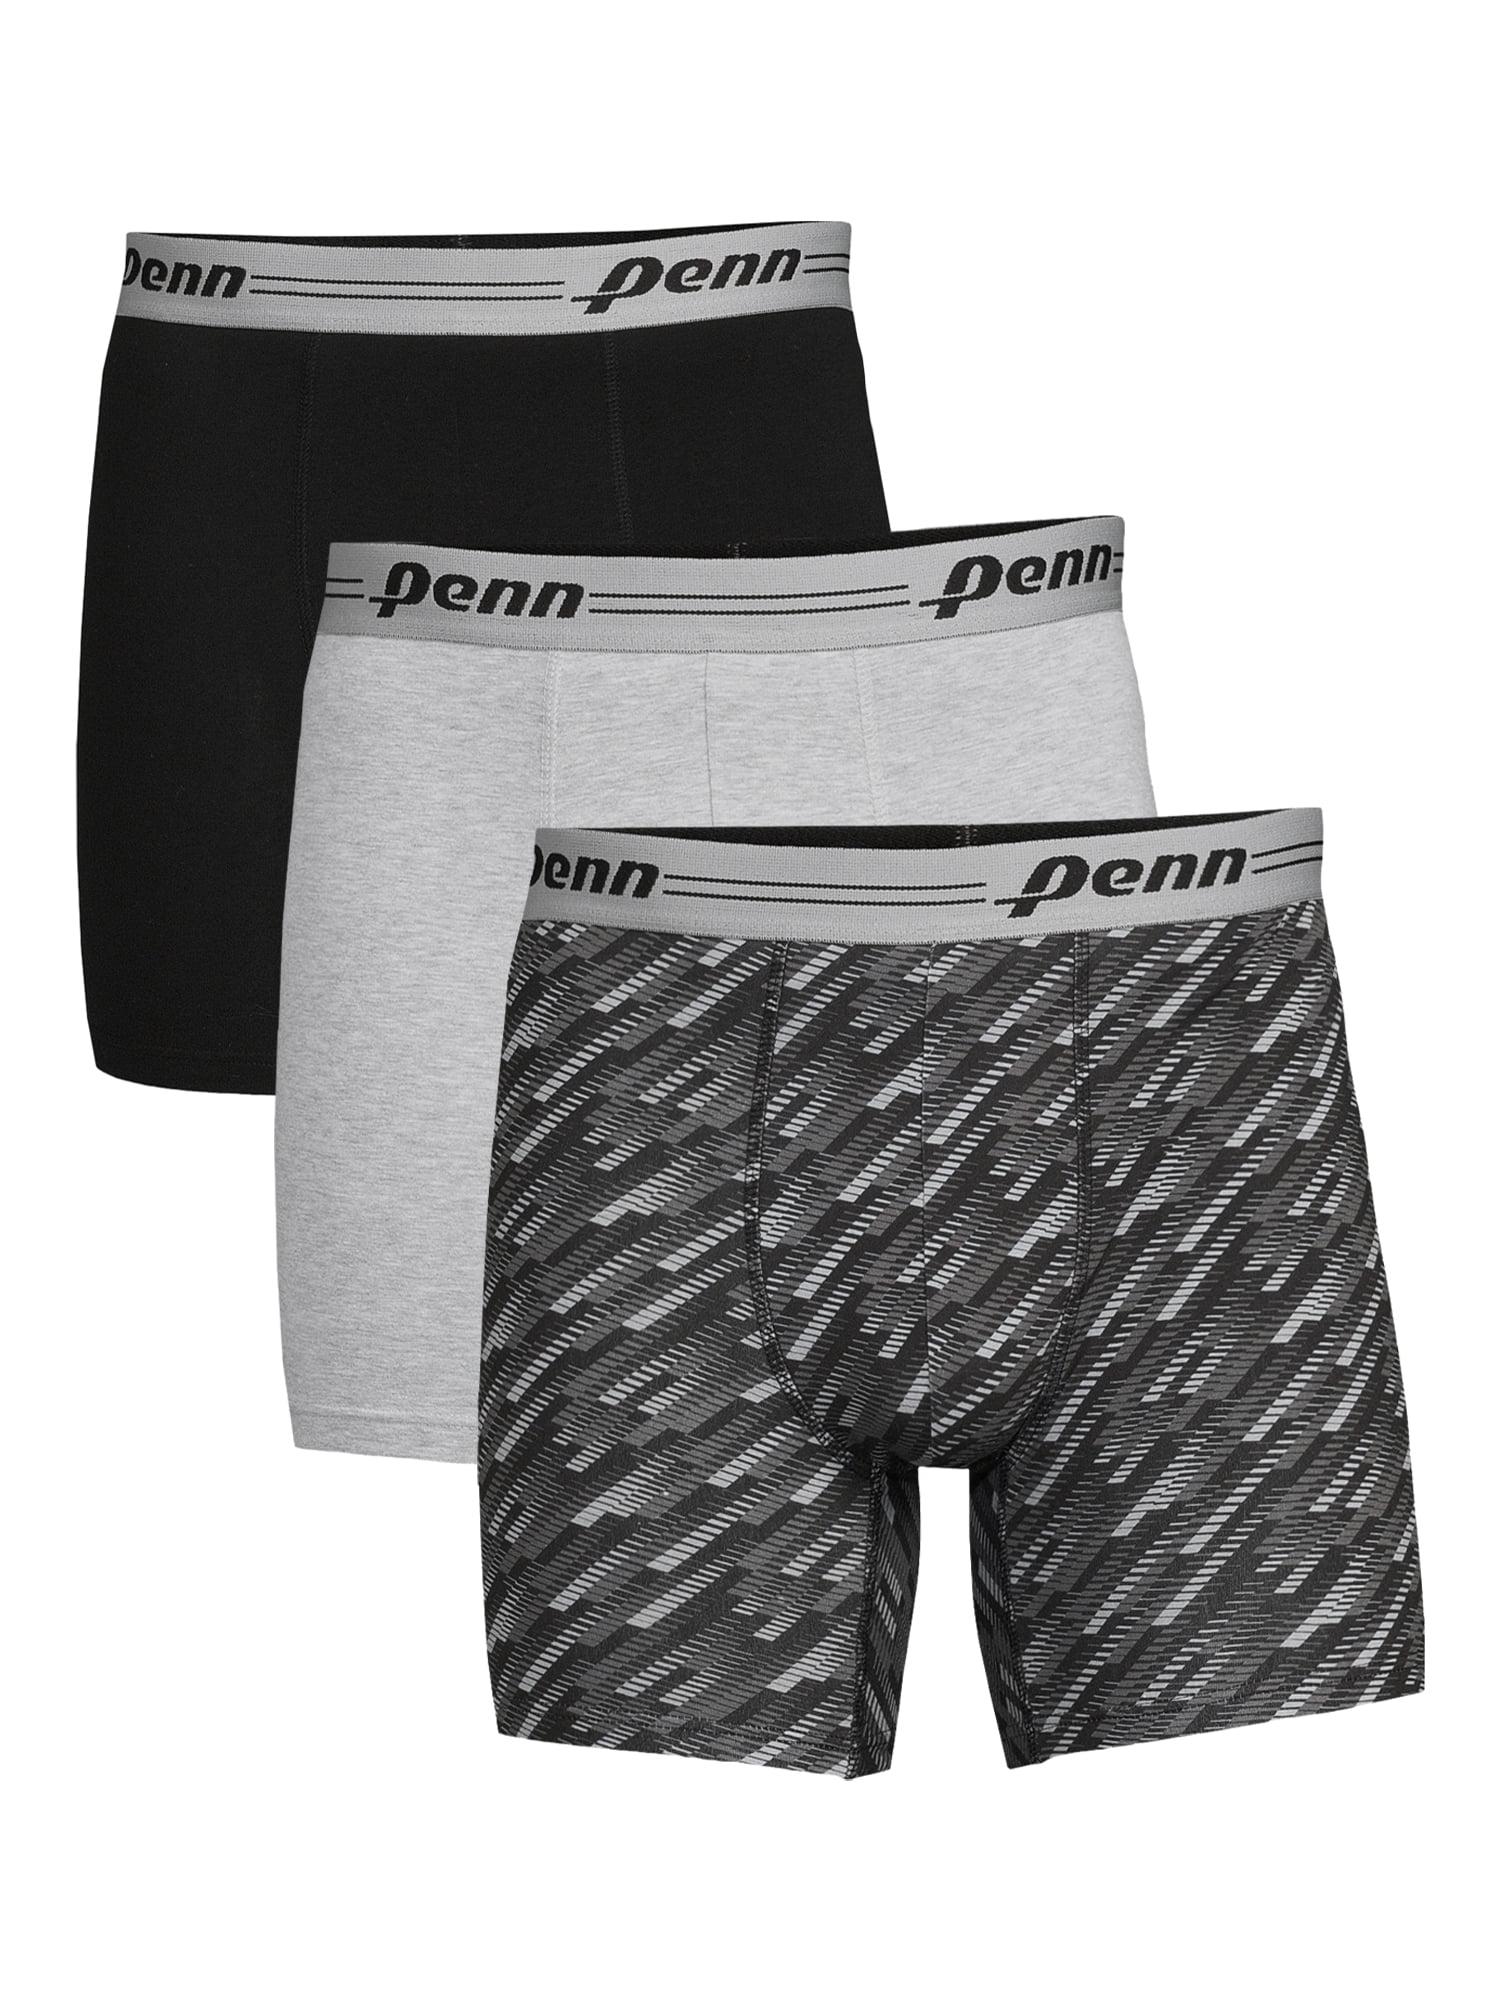 Penn 3-Pack Adult Mens Cotton Stretch Boxer Briefs, Sizes S-XL ...